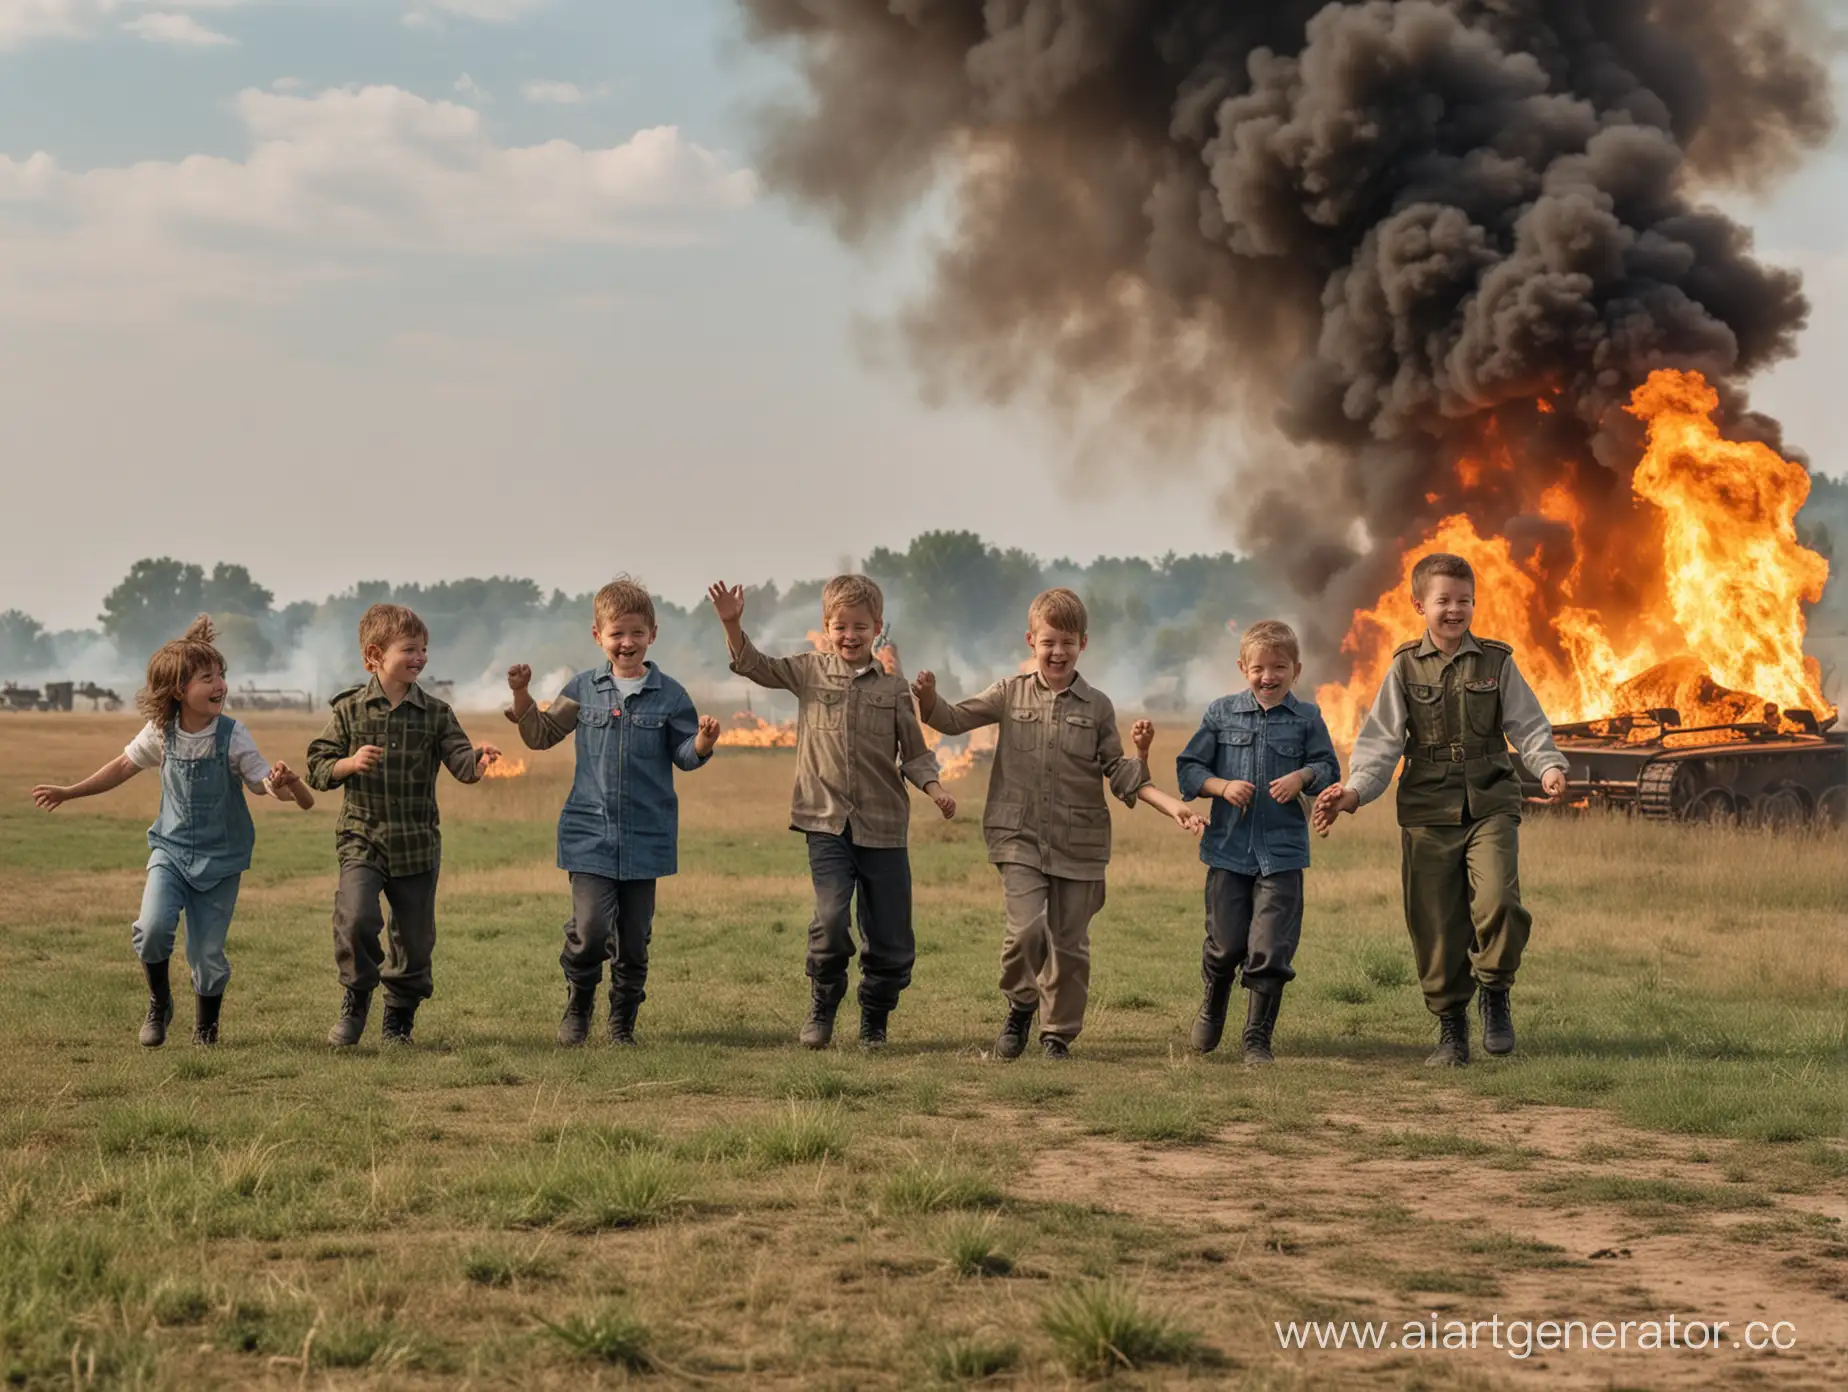 Пятеро радостных семилетних детей танцуют на поле. Позади них пожар, дым, солдаты и танки.